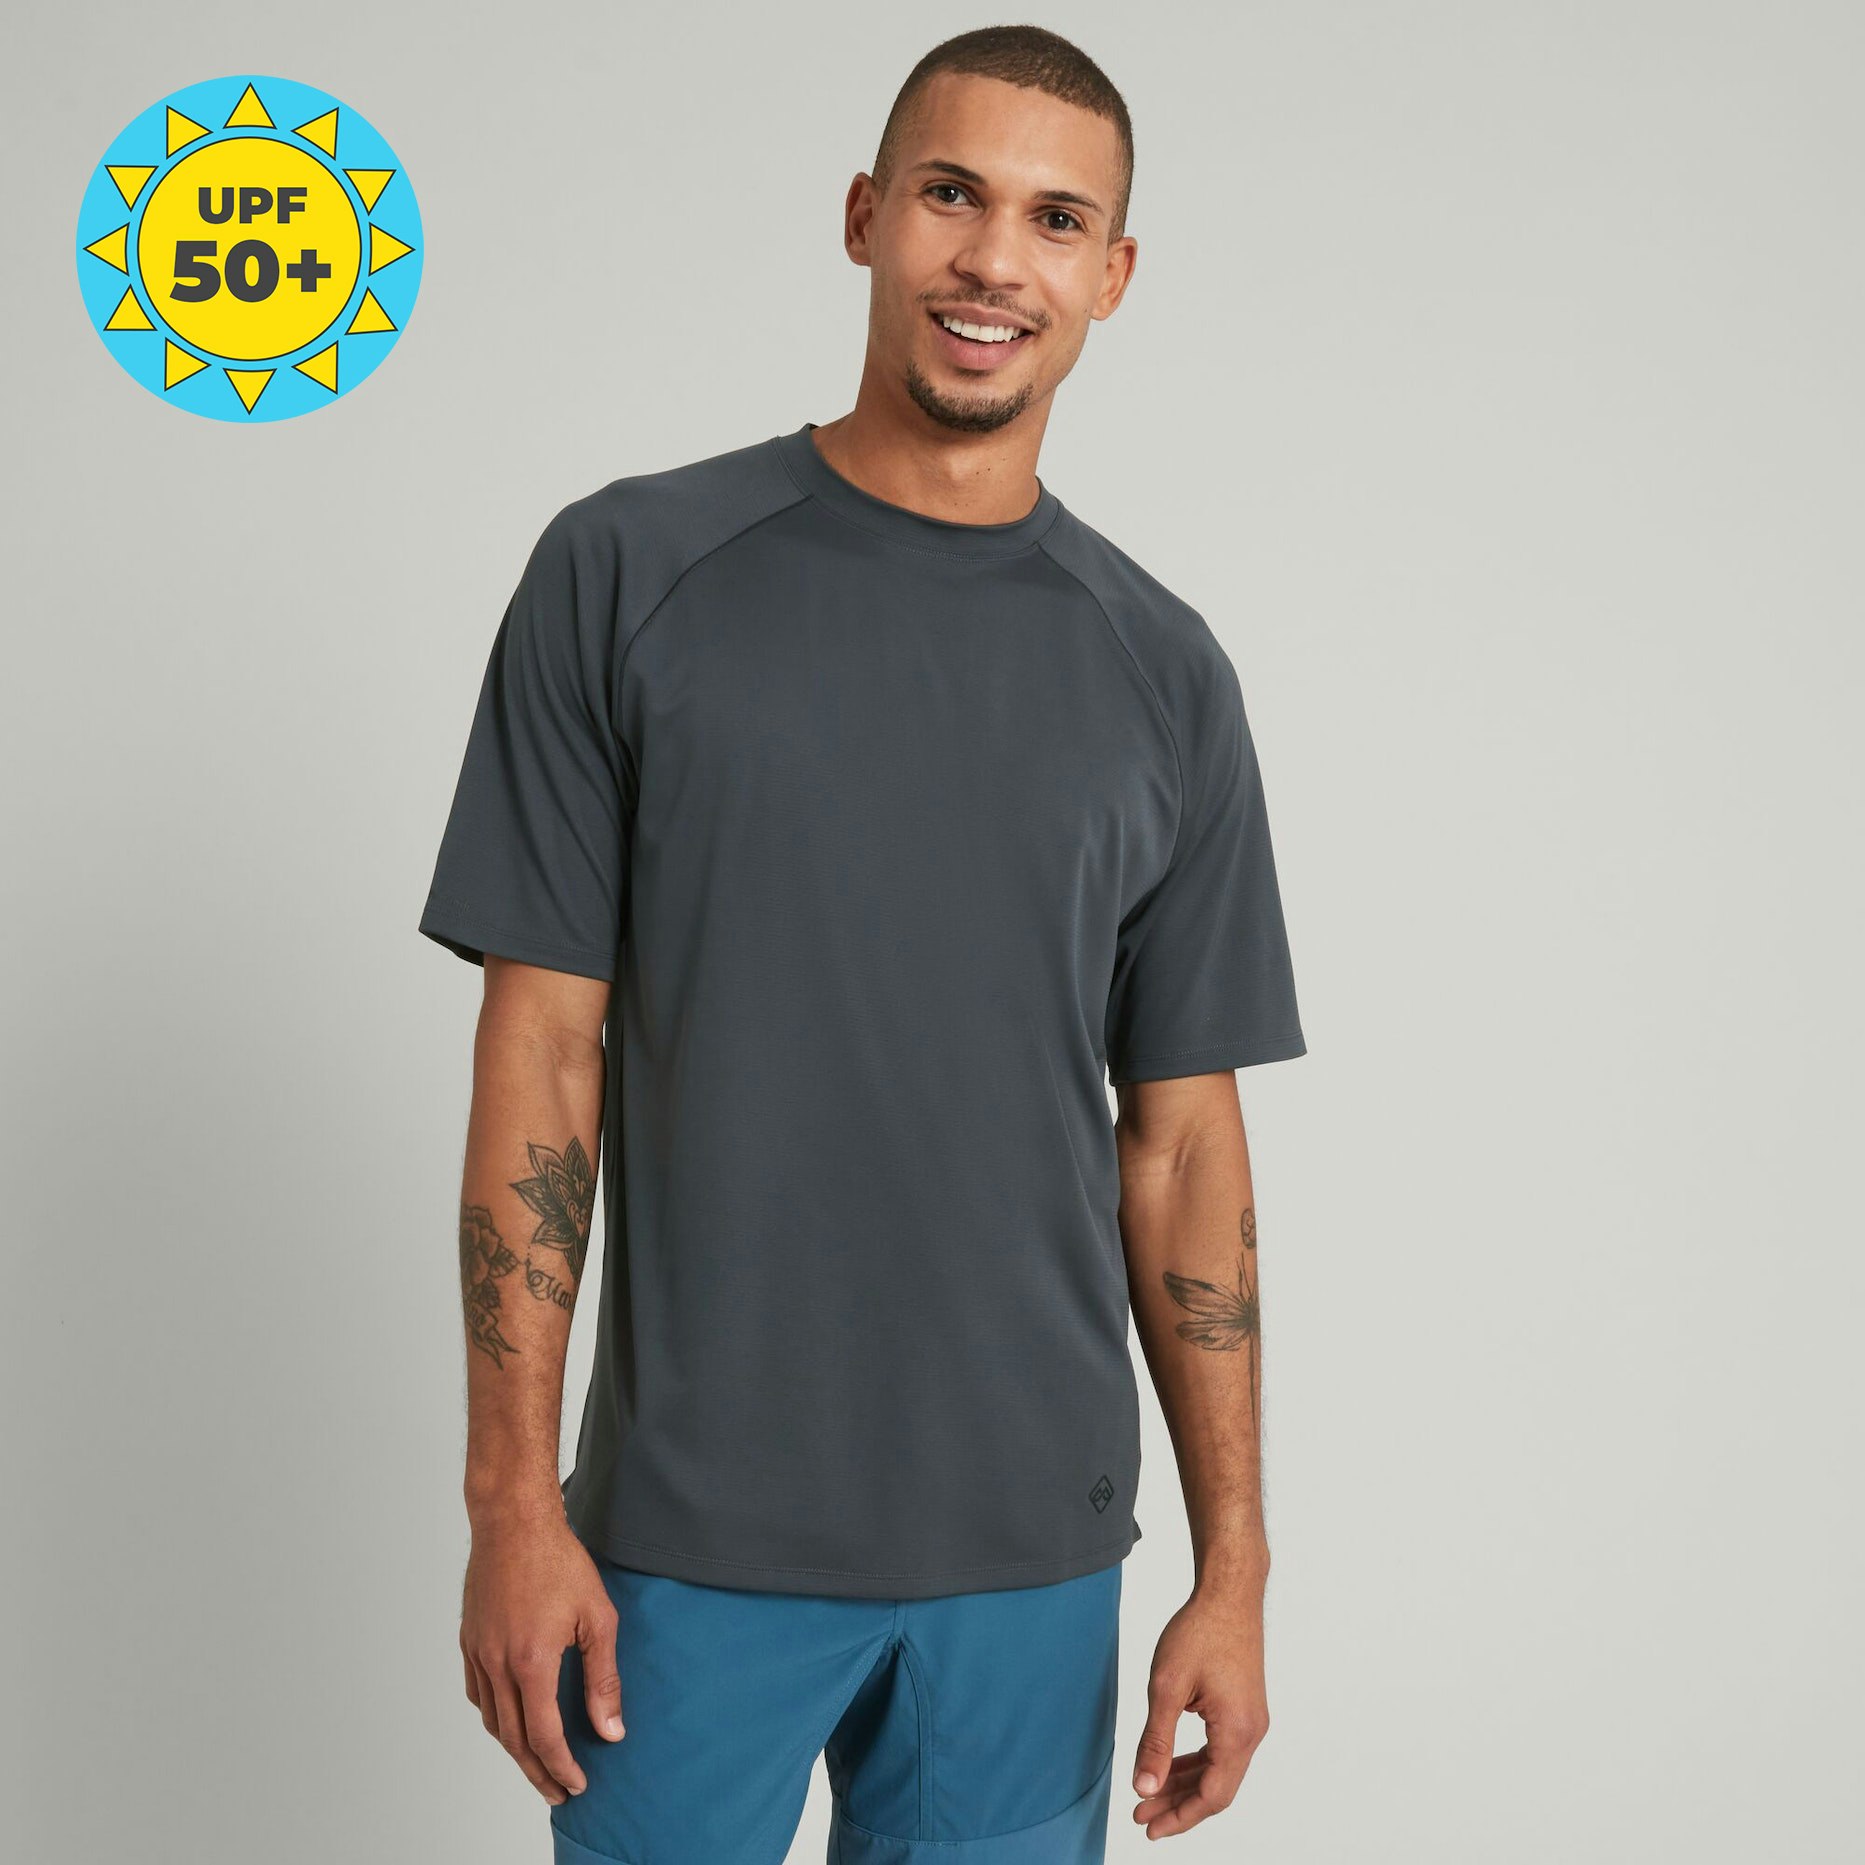 SUN-Stopper Men's Short Sleeve T-shirt